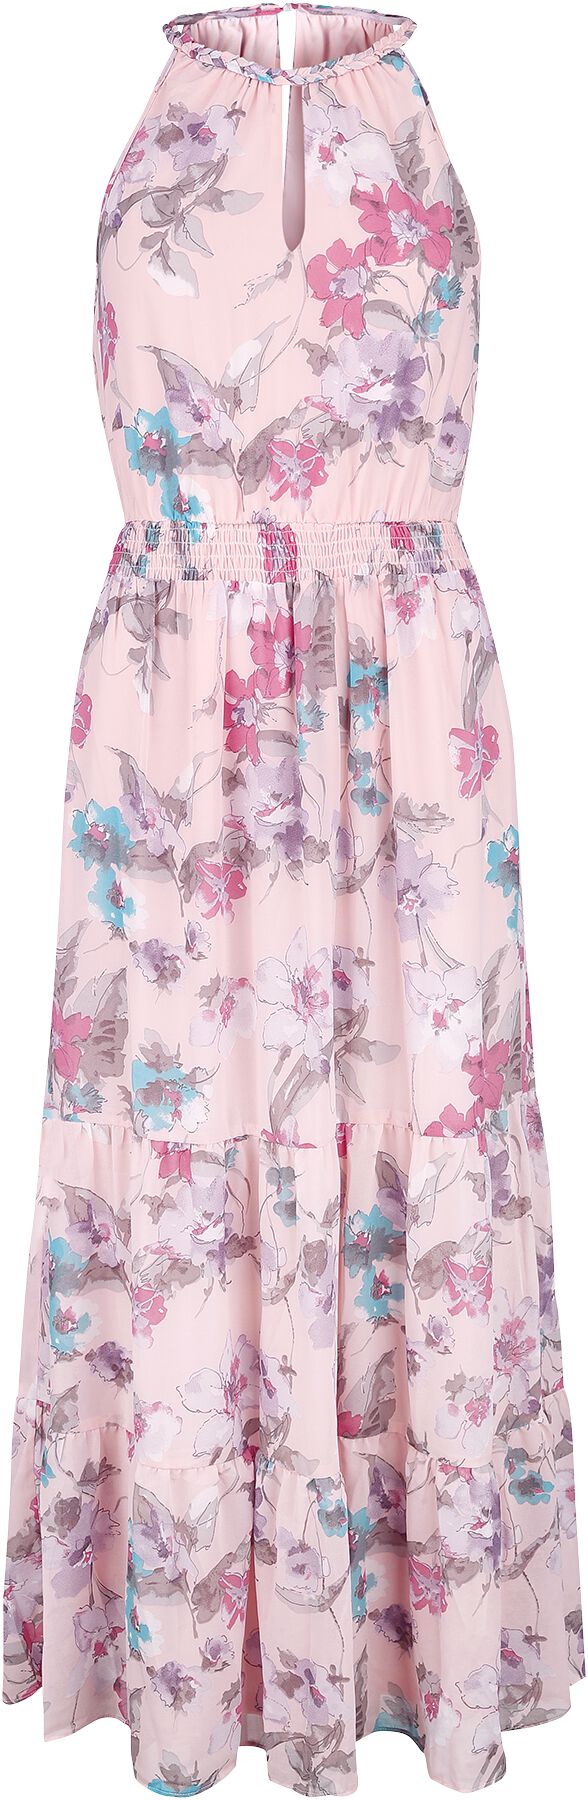 Robe longue Rockabilly de QED London - Floral Print Halterneck Tiered Midi Dress - XS à L - pour Fem